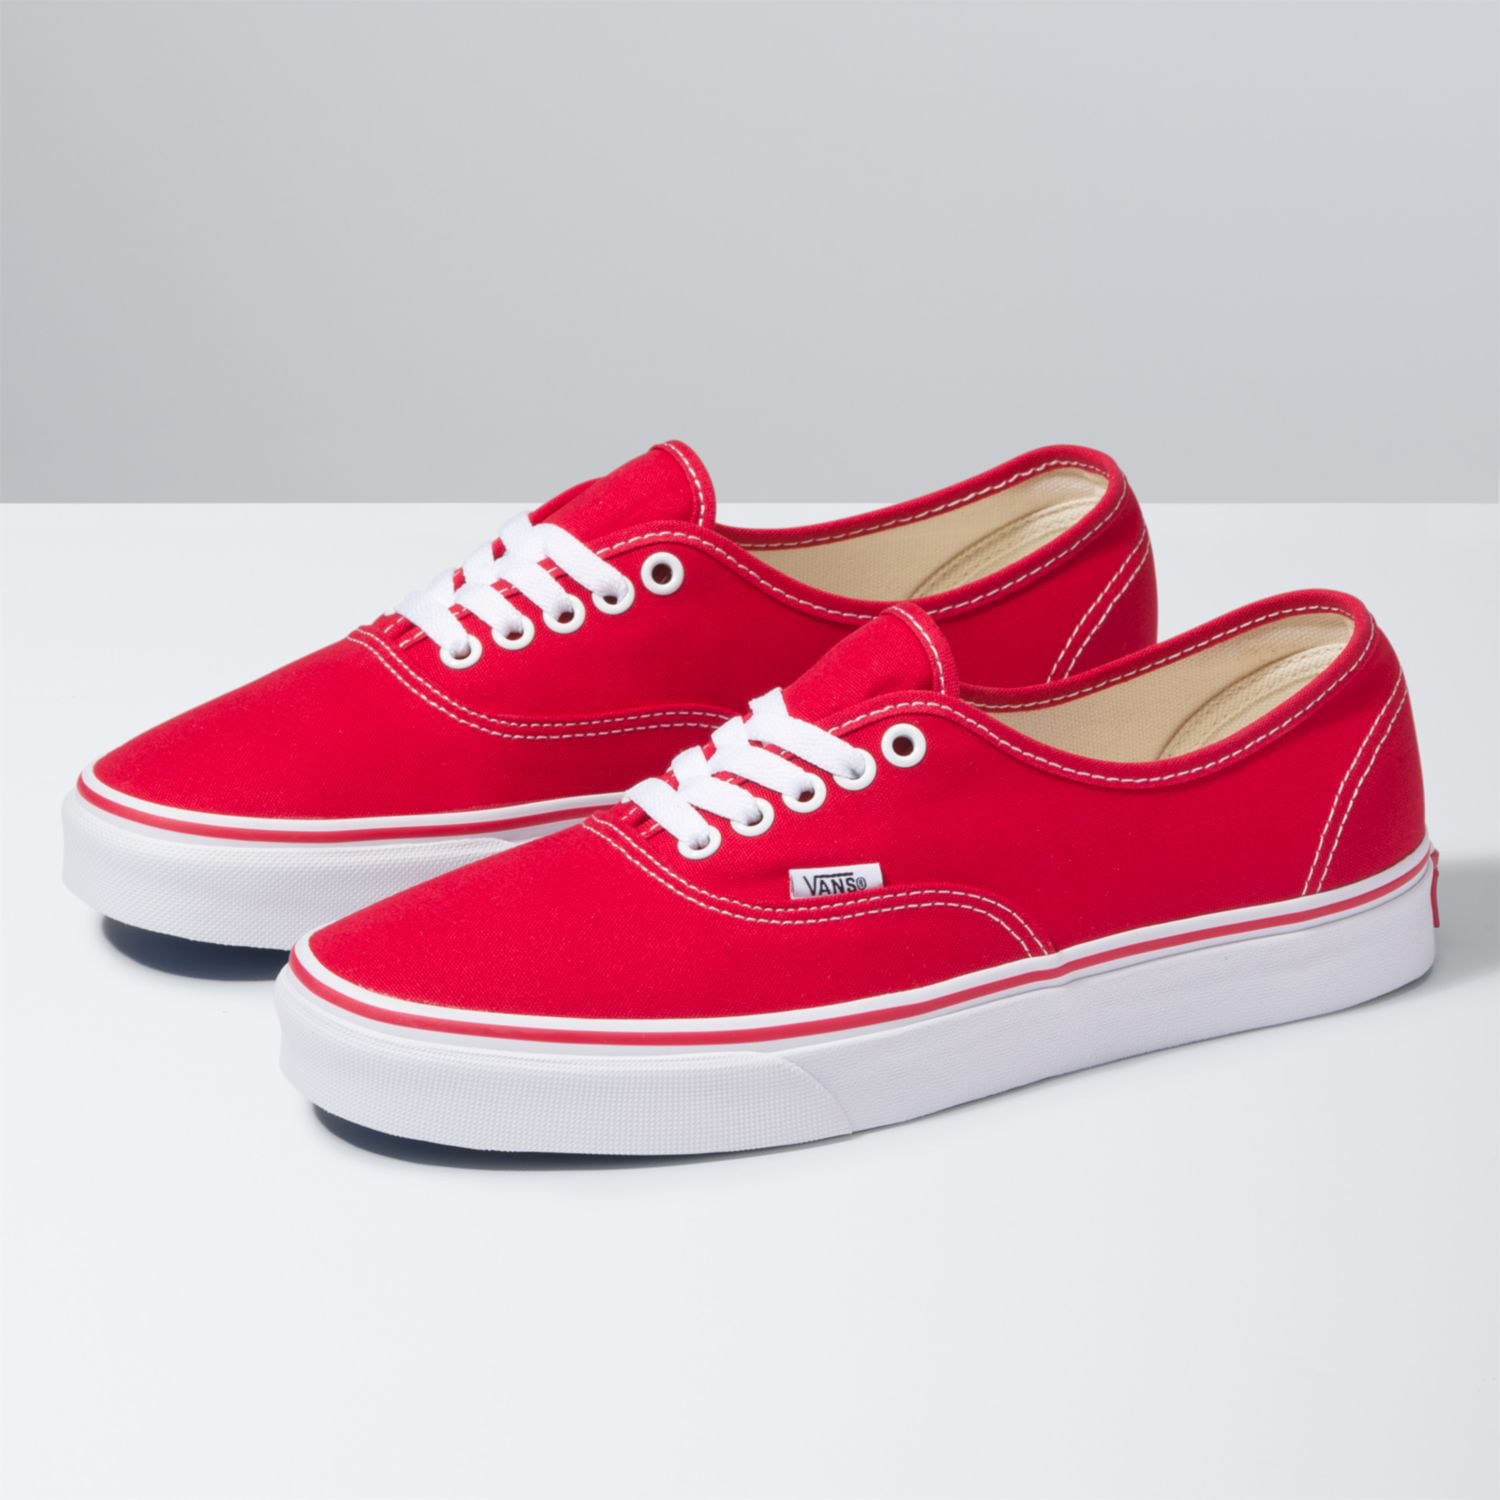 Rojo - Calzado - Vans® Chile: Zapatillas, Accesorios y Moda Urbana